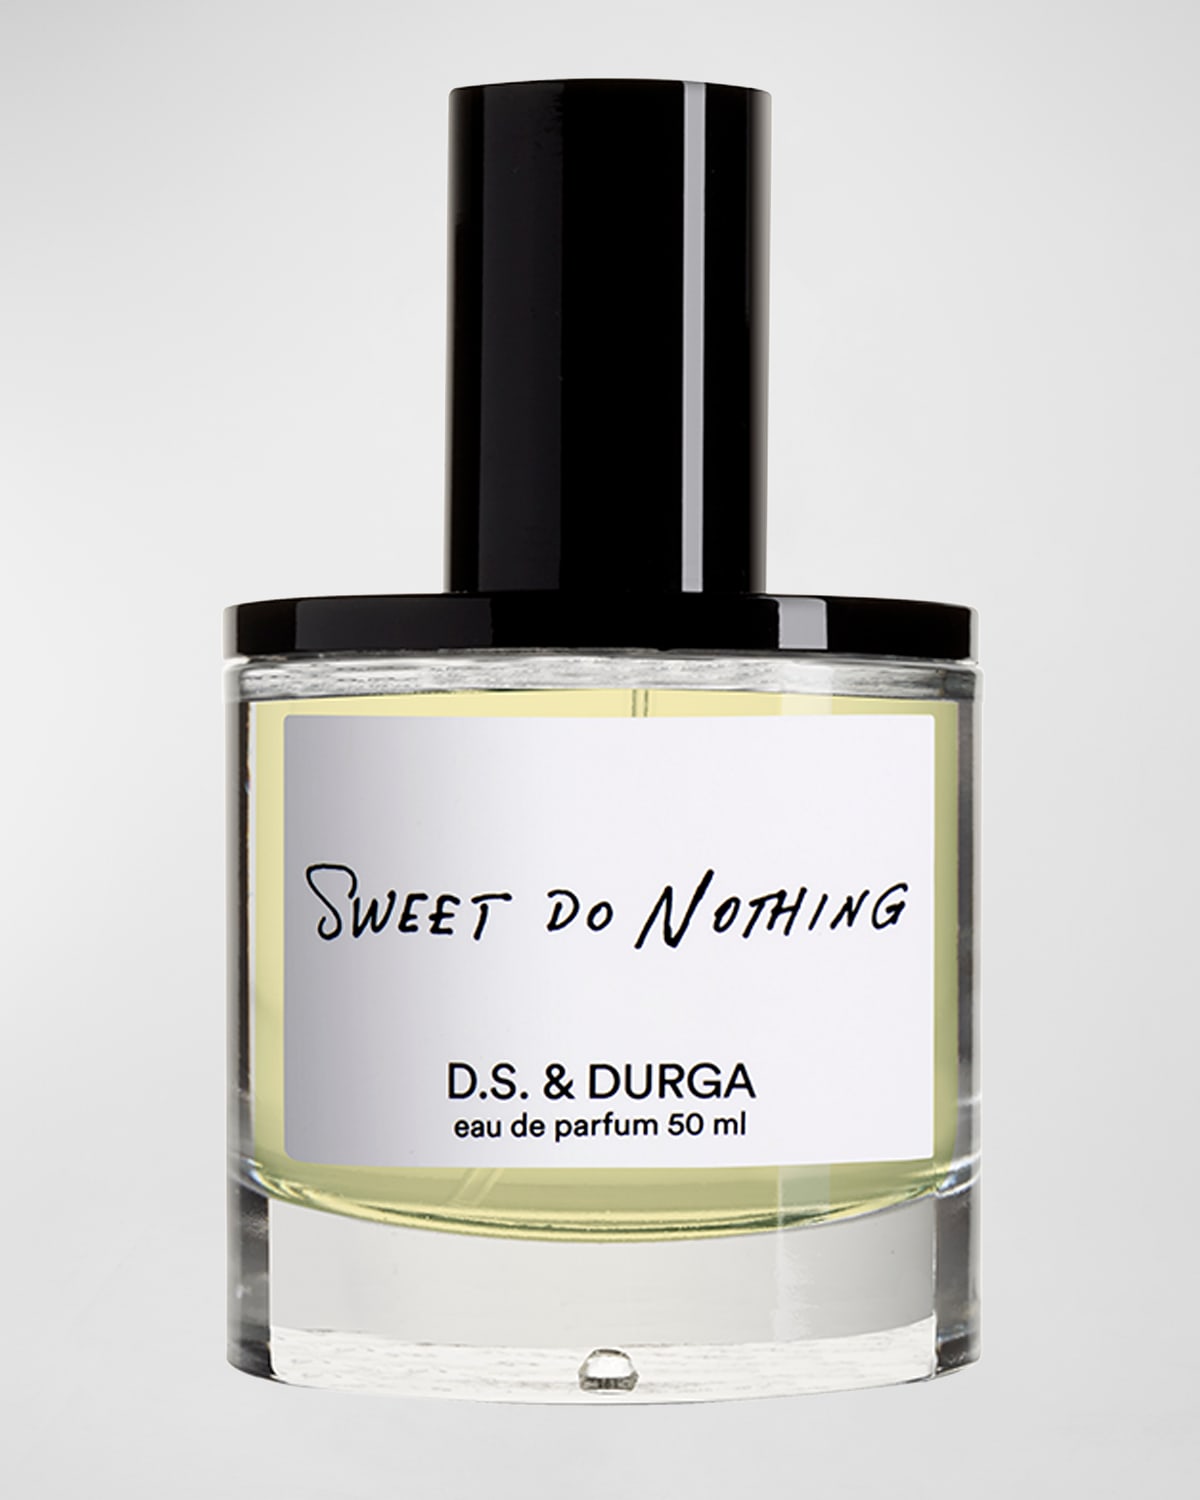 D.S. & DURGA Sweet Do Nothing Eau de Parfum, 1.7 oz.